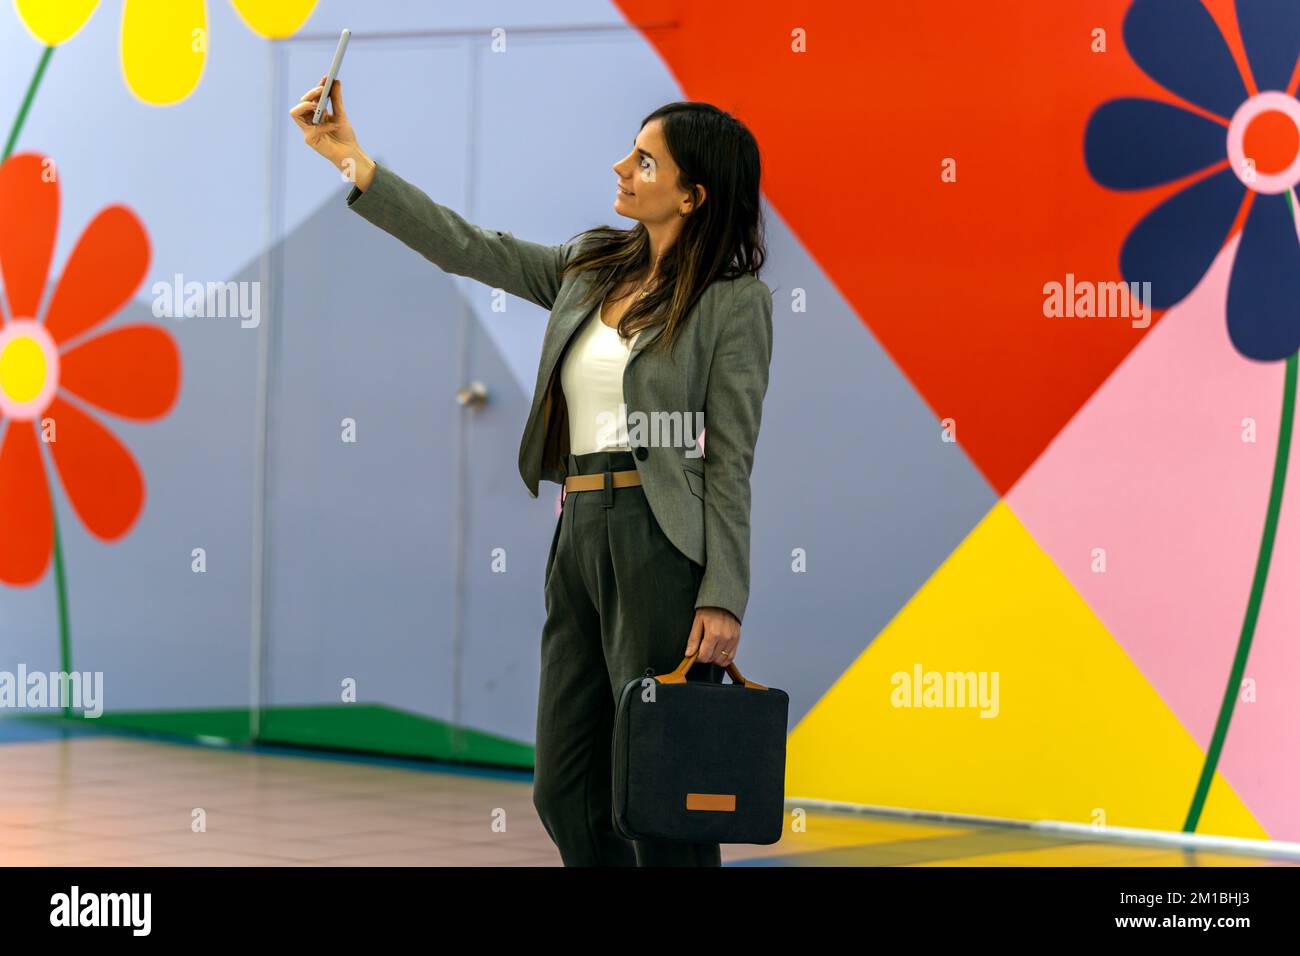 Unternehmerin in eleganter Freizeitkleidung mit lächelnder Aktentasche und Selfie an farbenfrohen Wänden mit geometrischen Verzierungen und Blumen Stockfoto